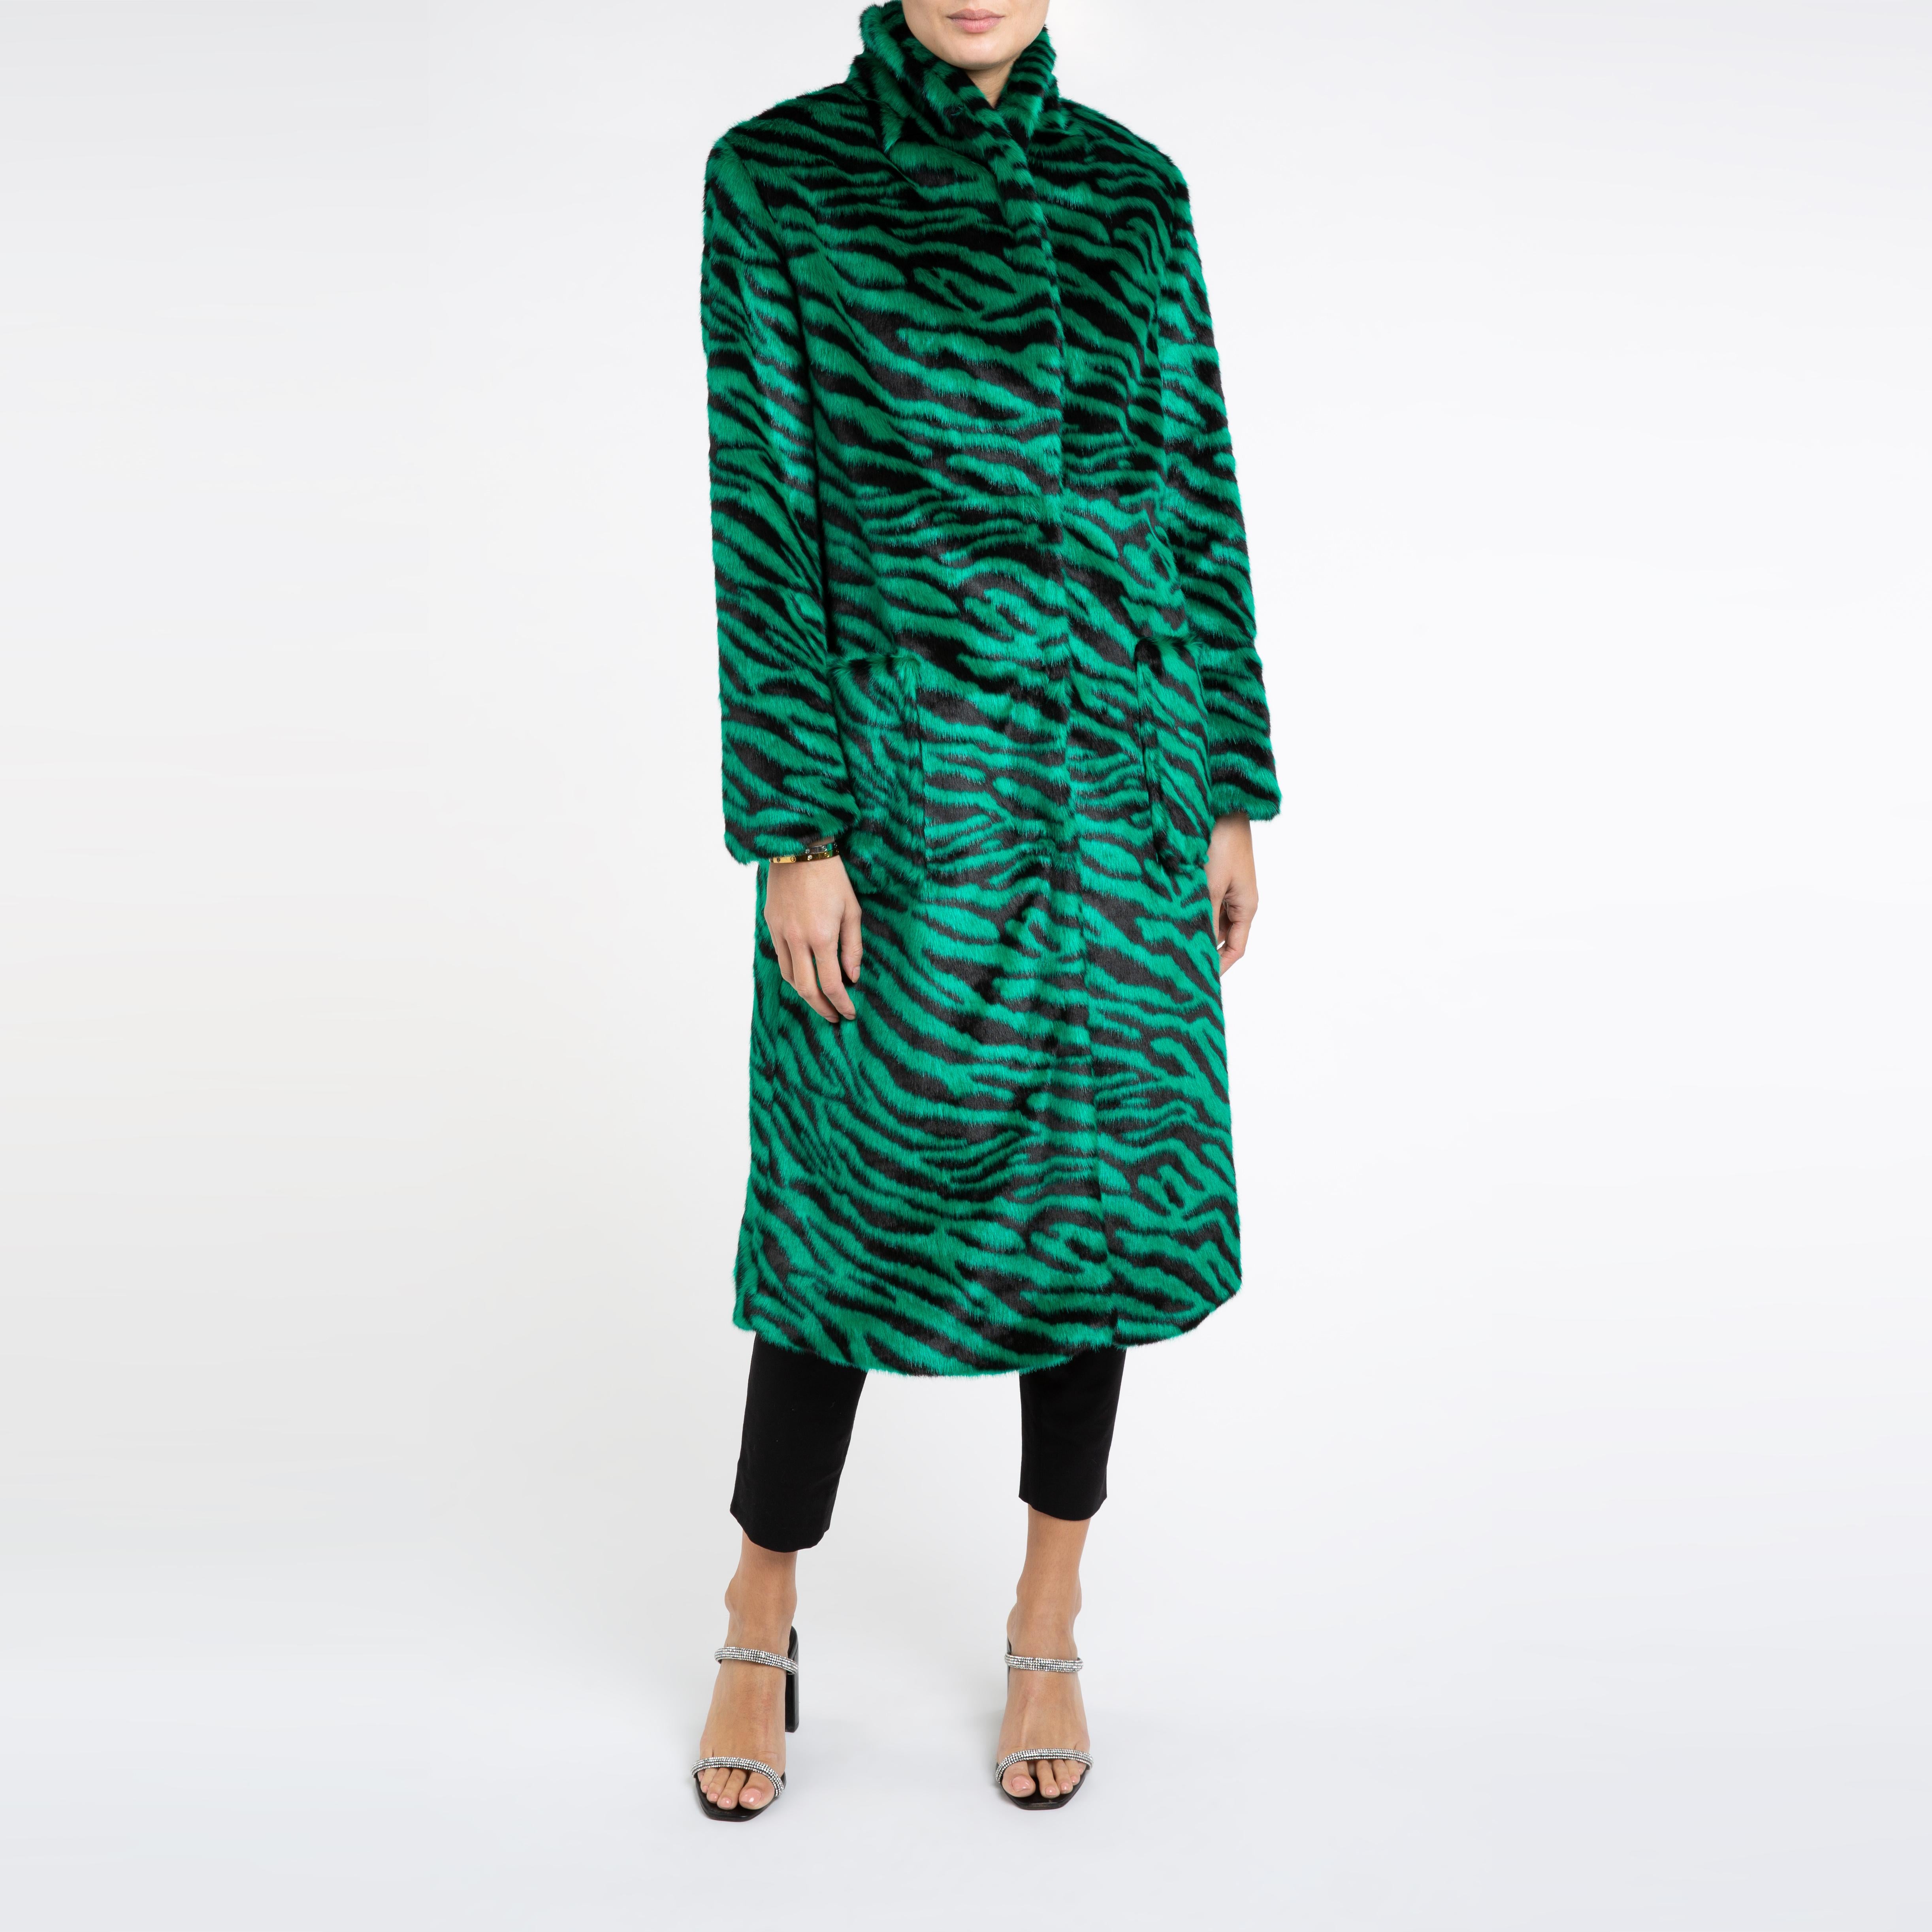 Verheyen London Esmeralda Faux Fur Coat in Emerald Green Zebra Print size uk 10 For Sale 3